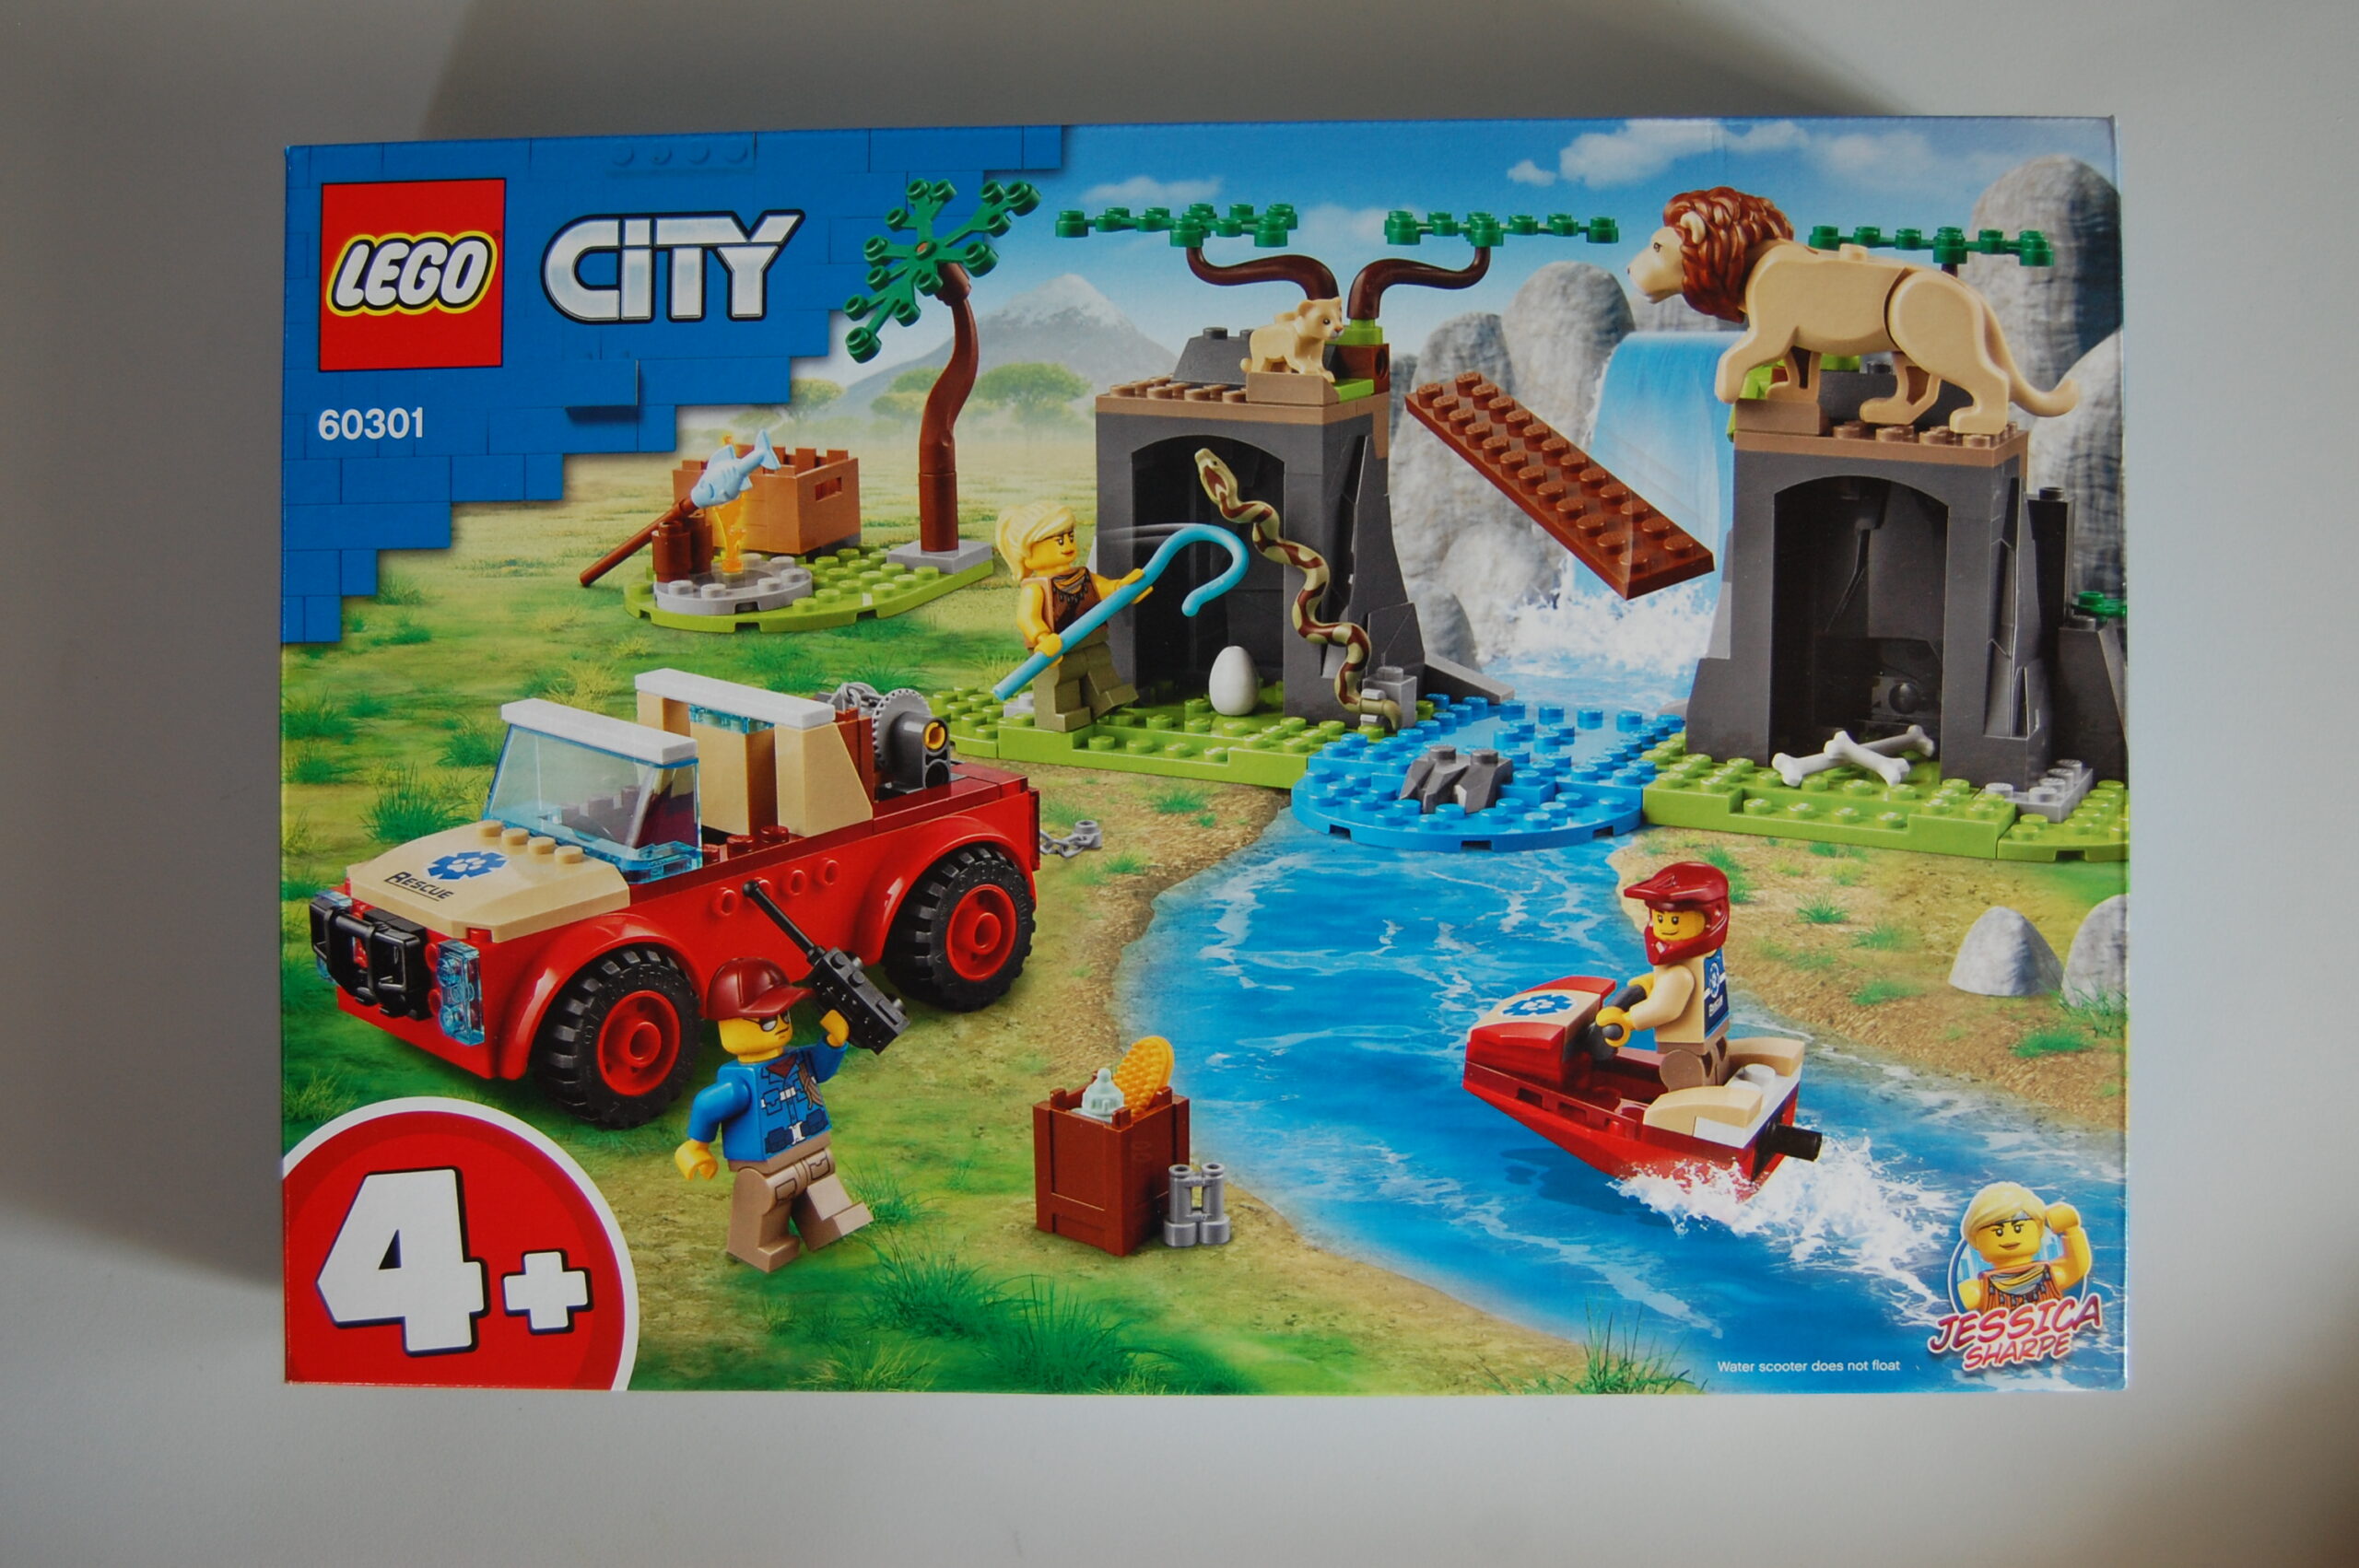 LEGO City 60301 Tierrettungs-Geländewagen | im zusammengebaut Review